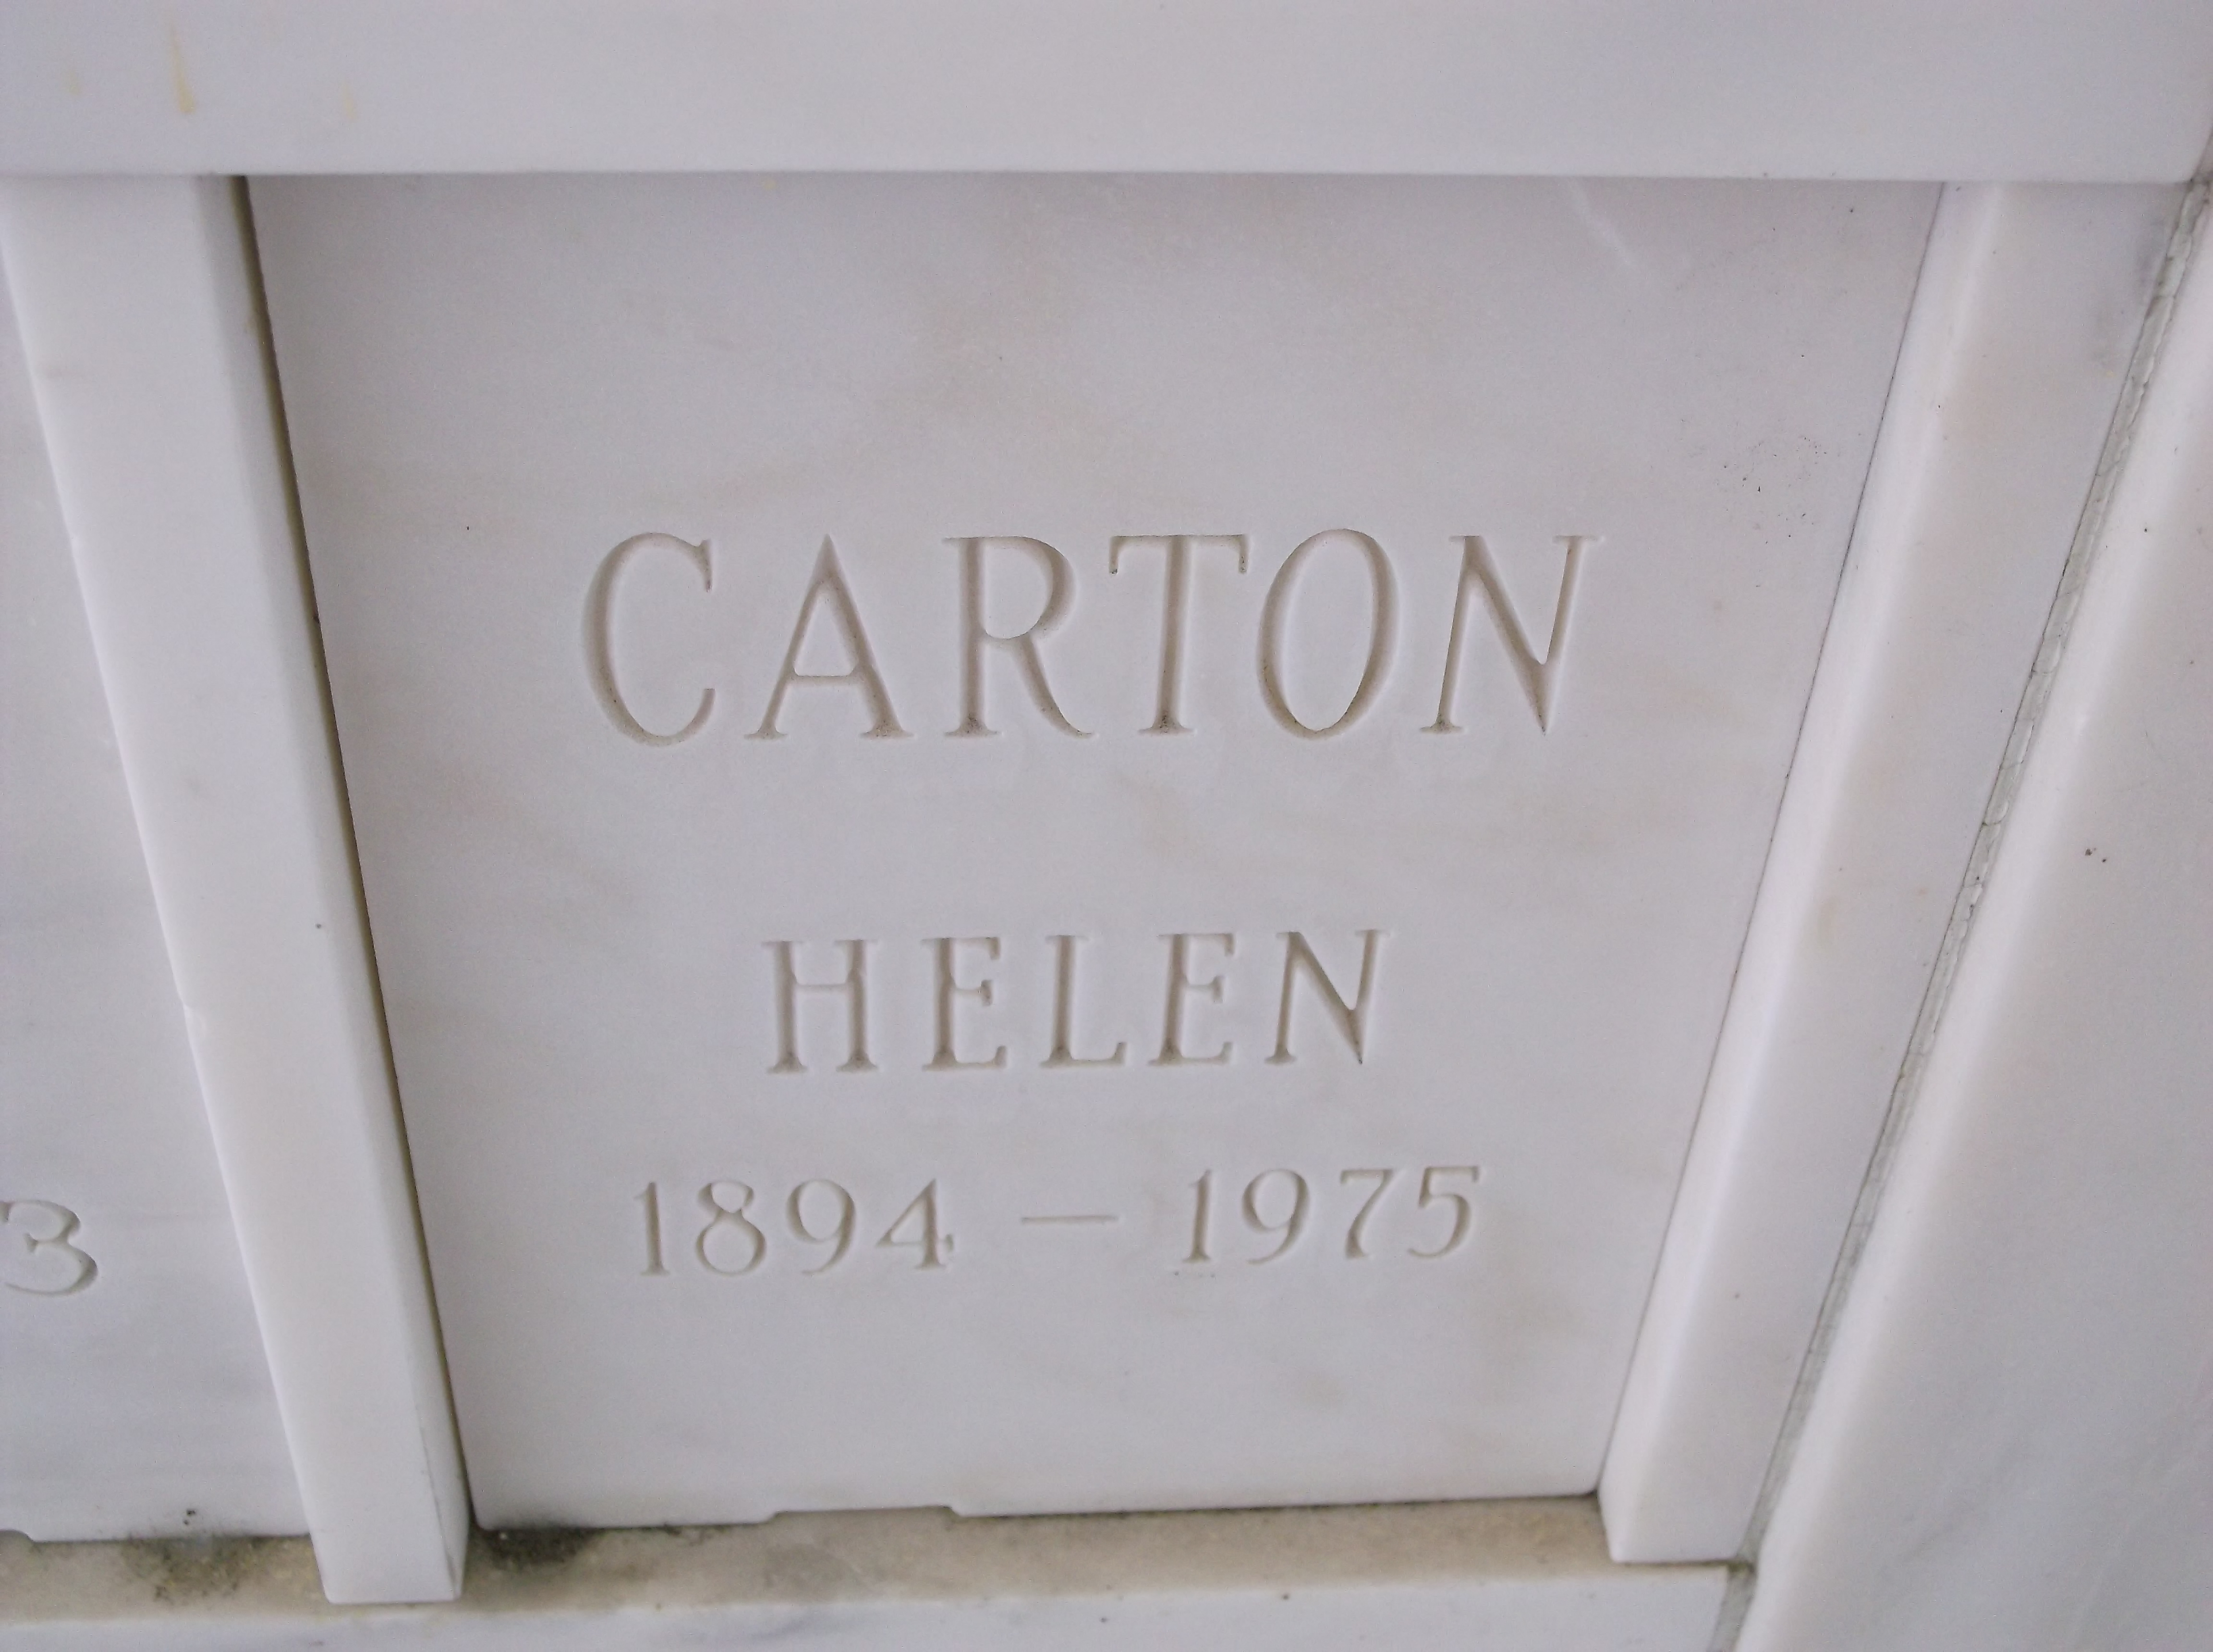 Helen Carton